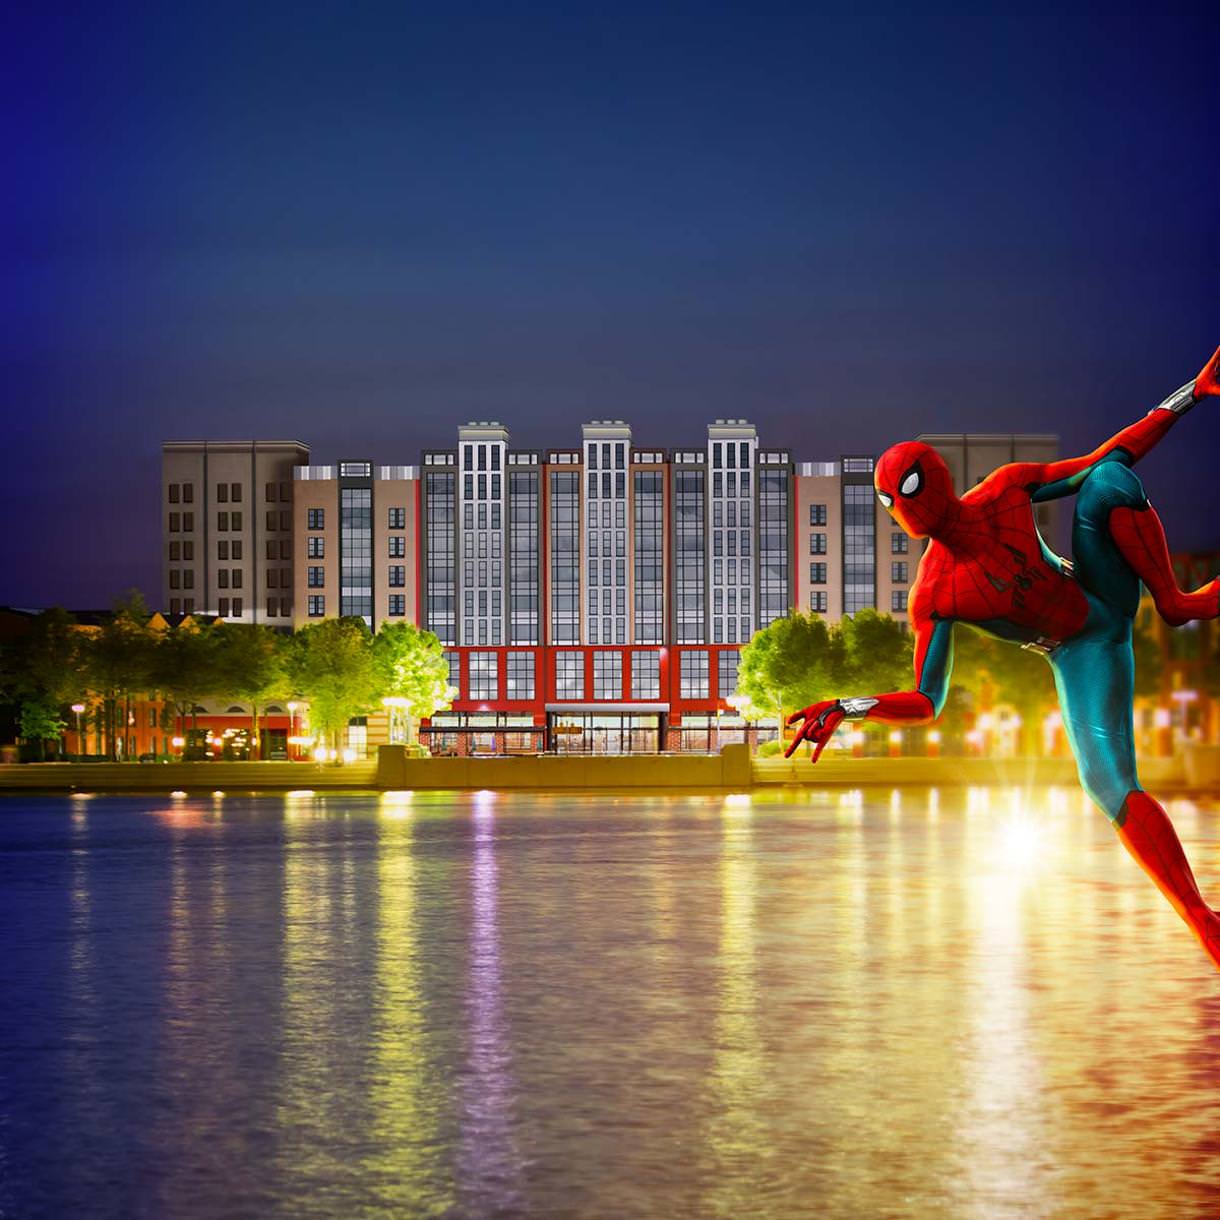 Disney_s Hotel New York - The Art of Marvel